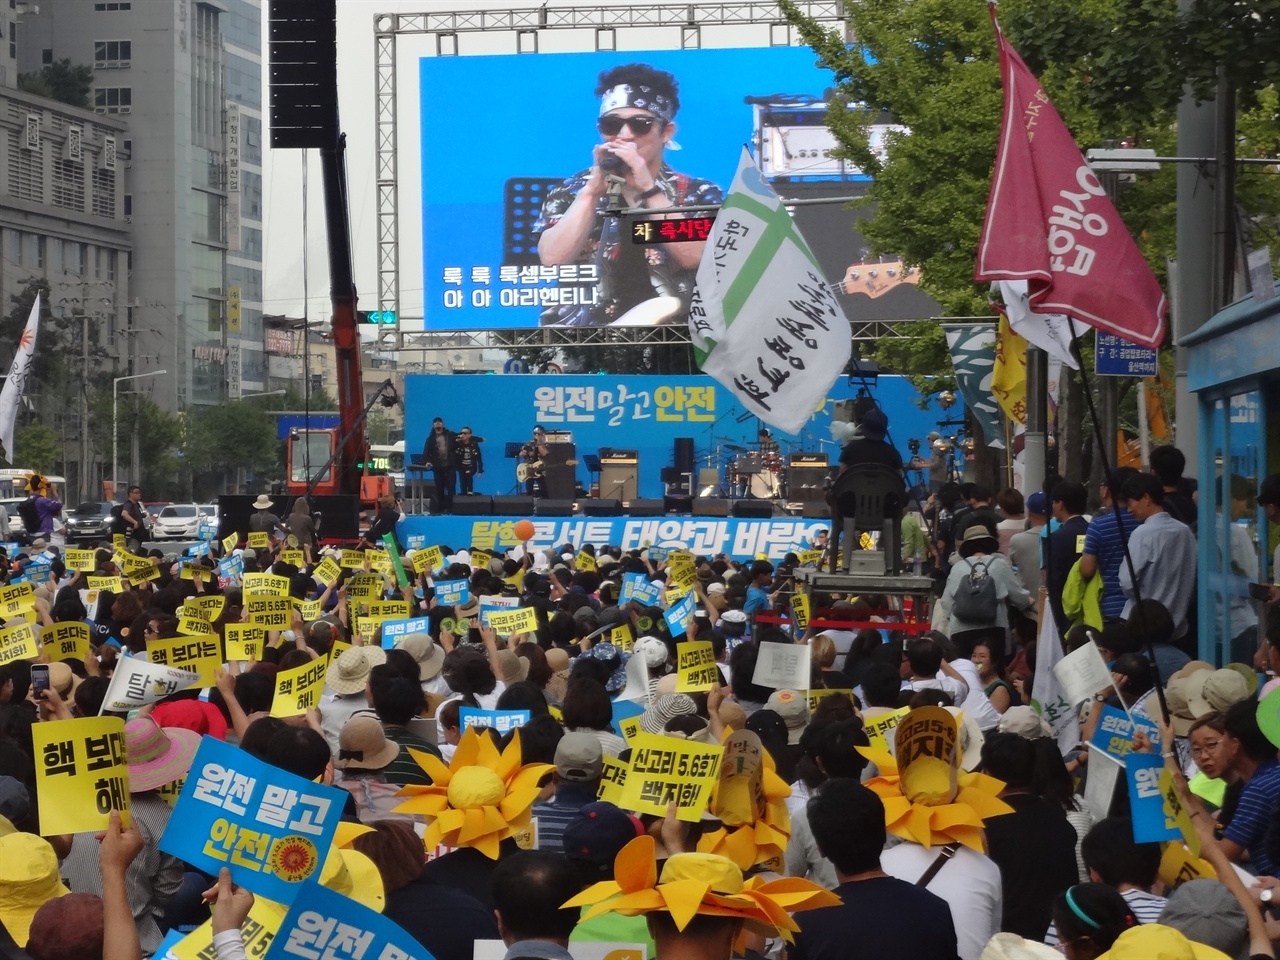 2017년 9월 9일에 개최된 대규모 탈핵집회에 공연에 동참하였다.